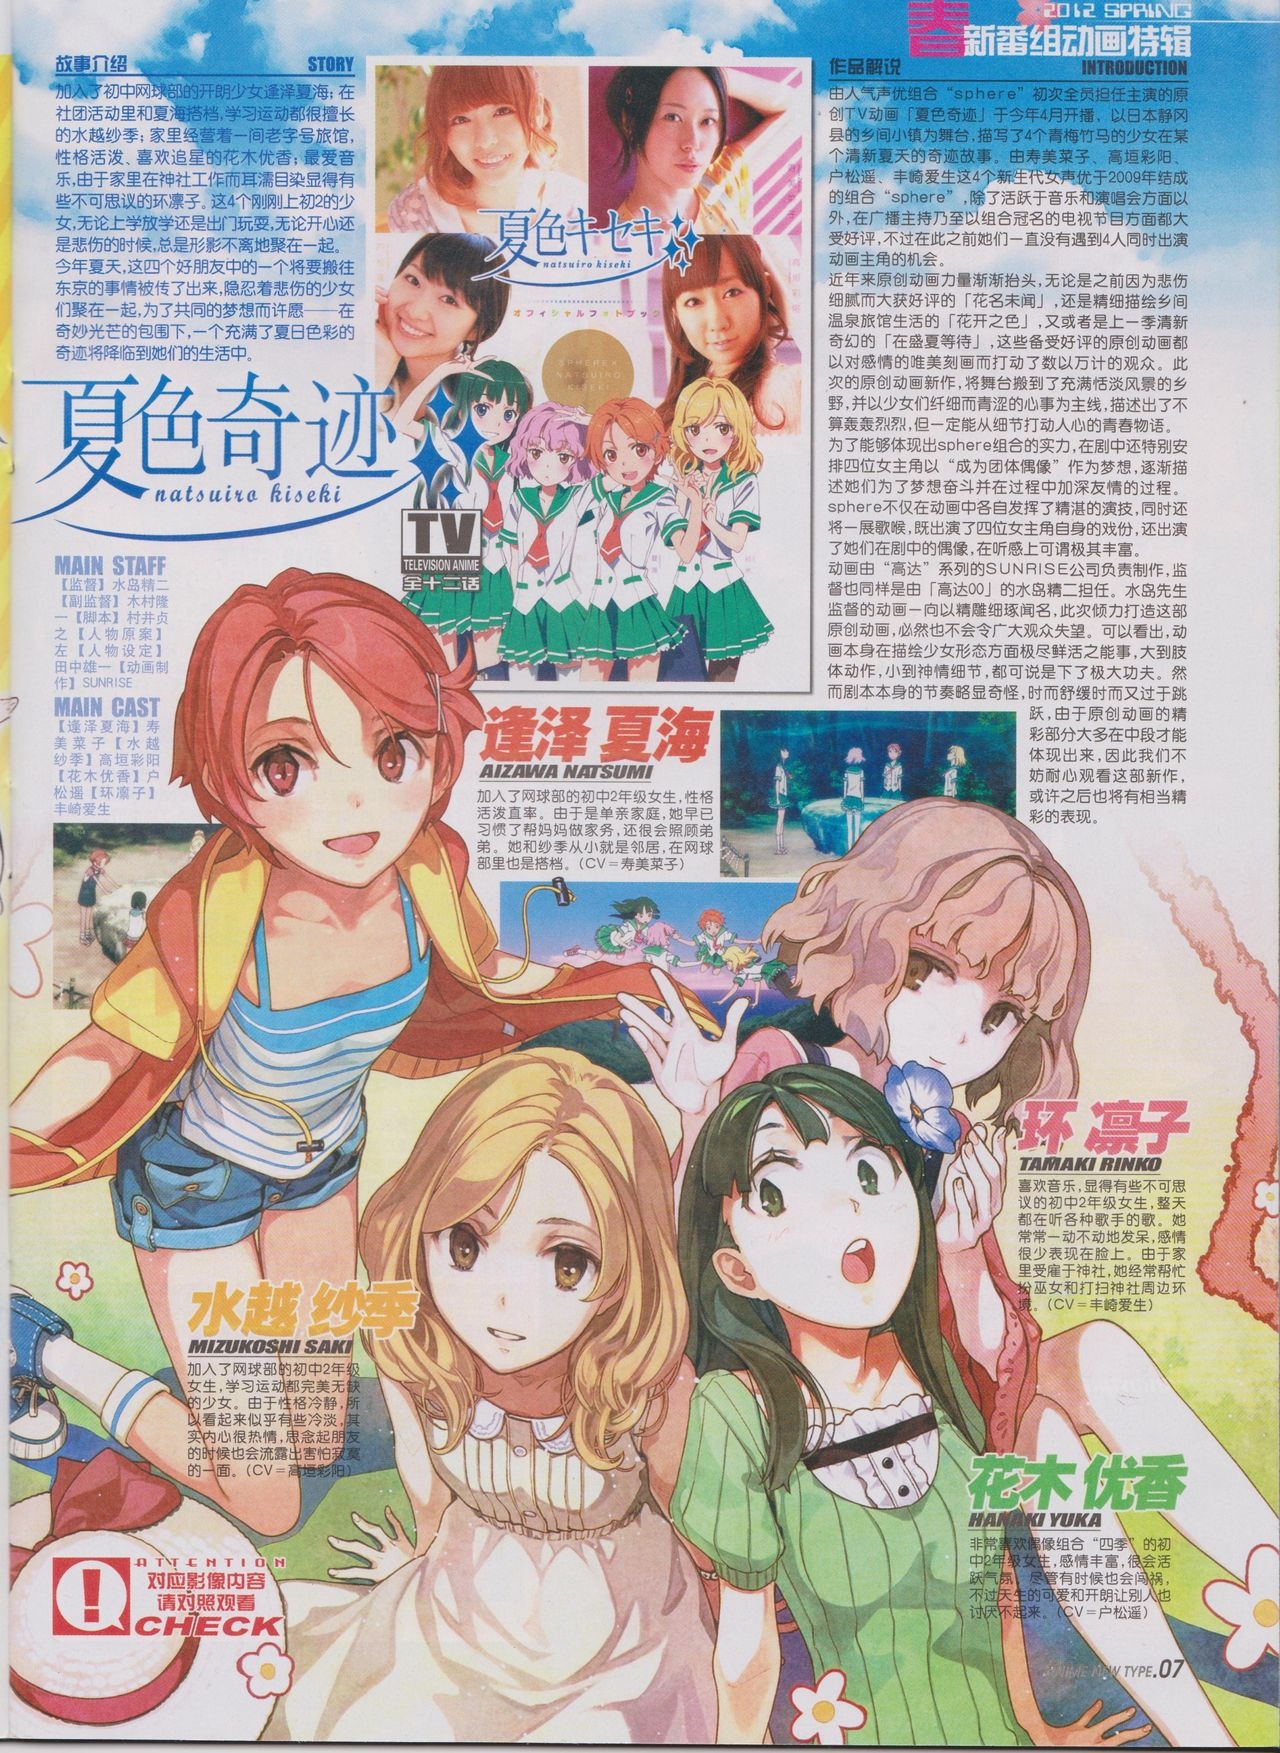 Anime New Type Vol.111 8